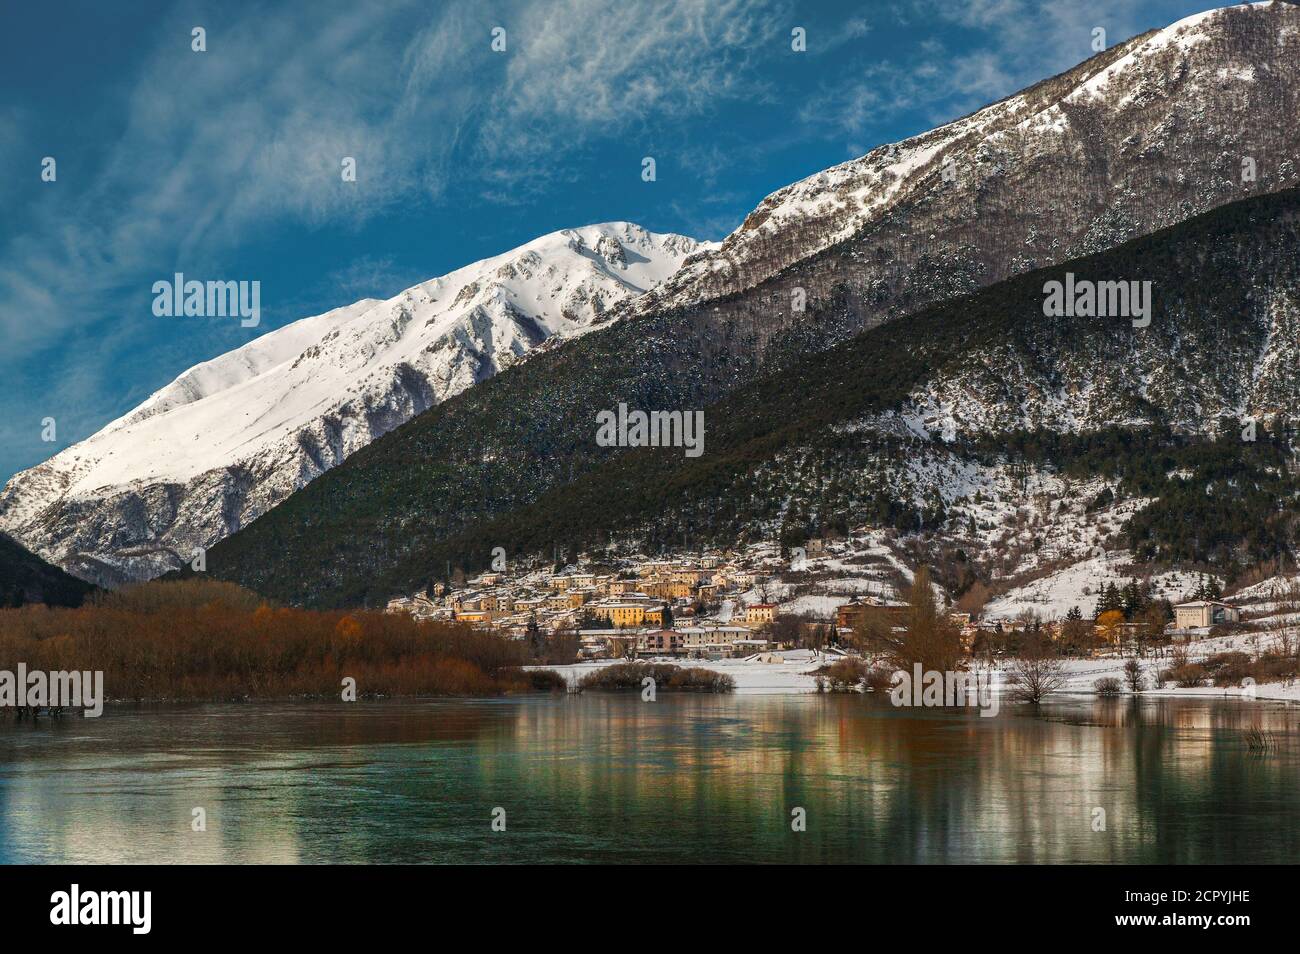 Winter landscape with landmark village and lake of Abruzzo, Lazio and Molise National Park. Villetta Barrea, province of L'Aquila, Abruzzo, Italy Stock Photo